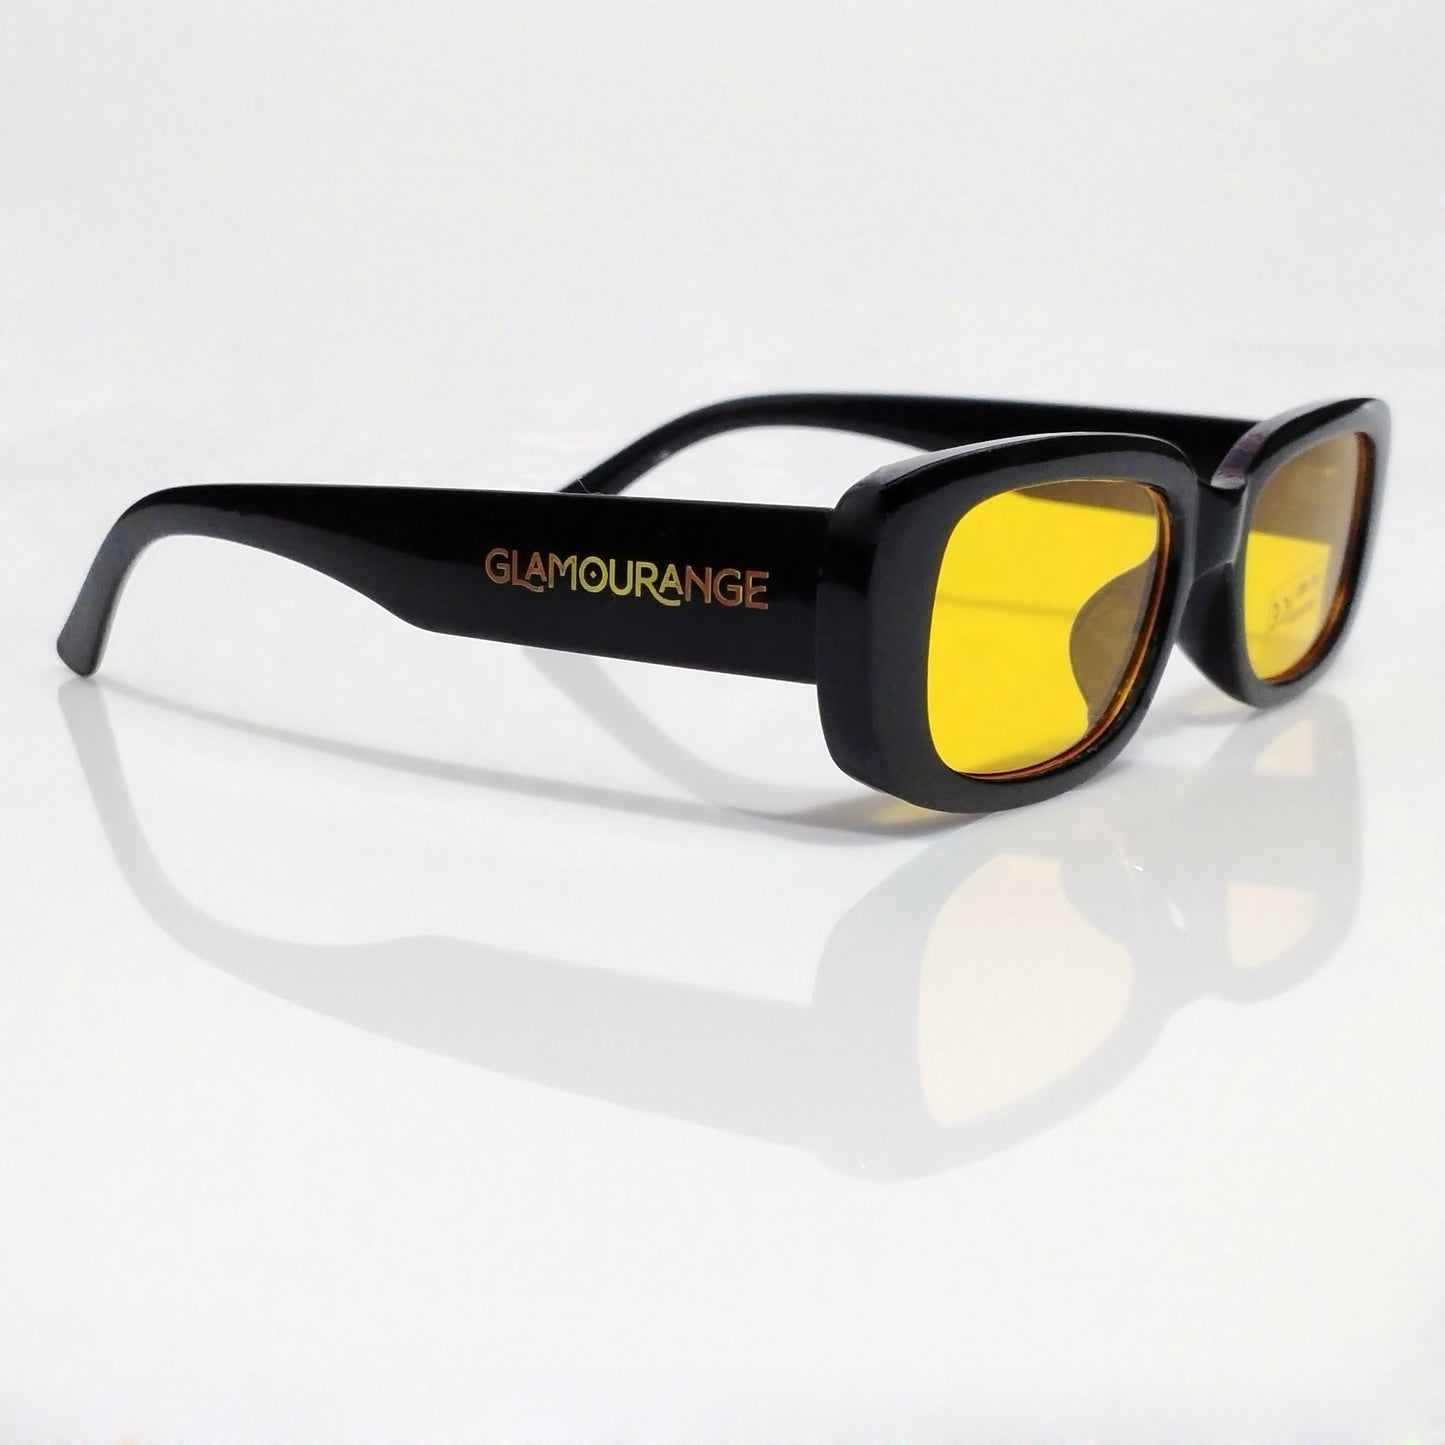 Glamourange Sunglasses Model GR-1004 C4